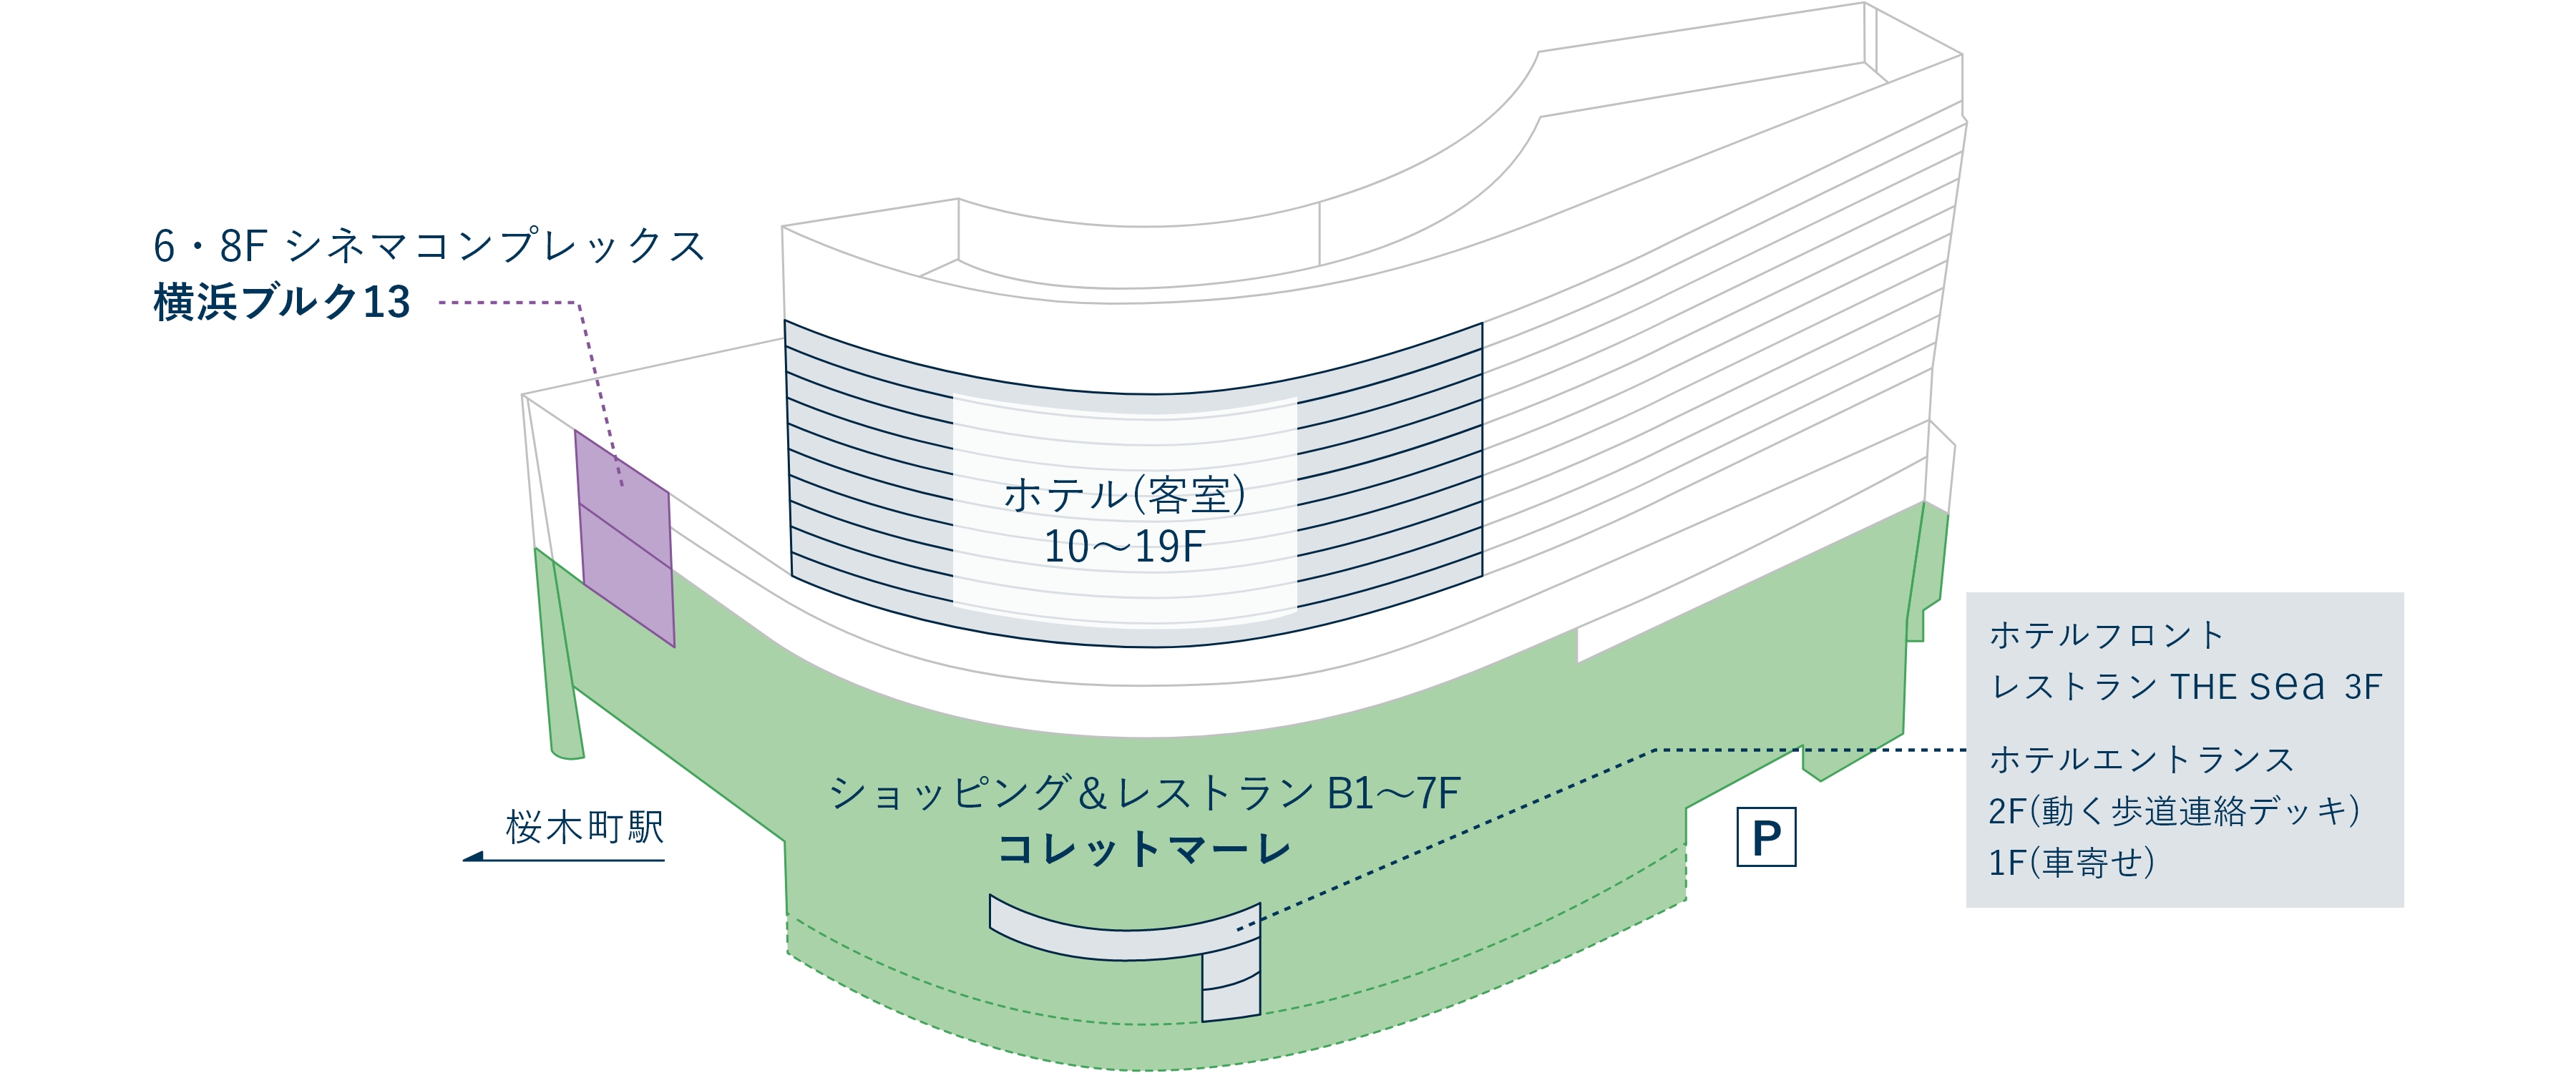 ニューオータニイン横浜プレミアムの館内案内図です。ホテルフロントはショッピング＆レストラン「コレットマーレ」の3階です。